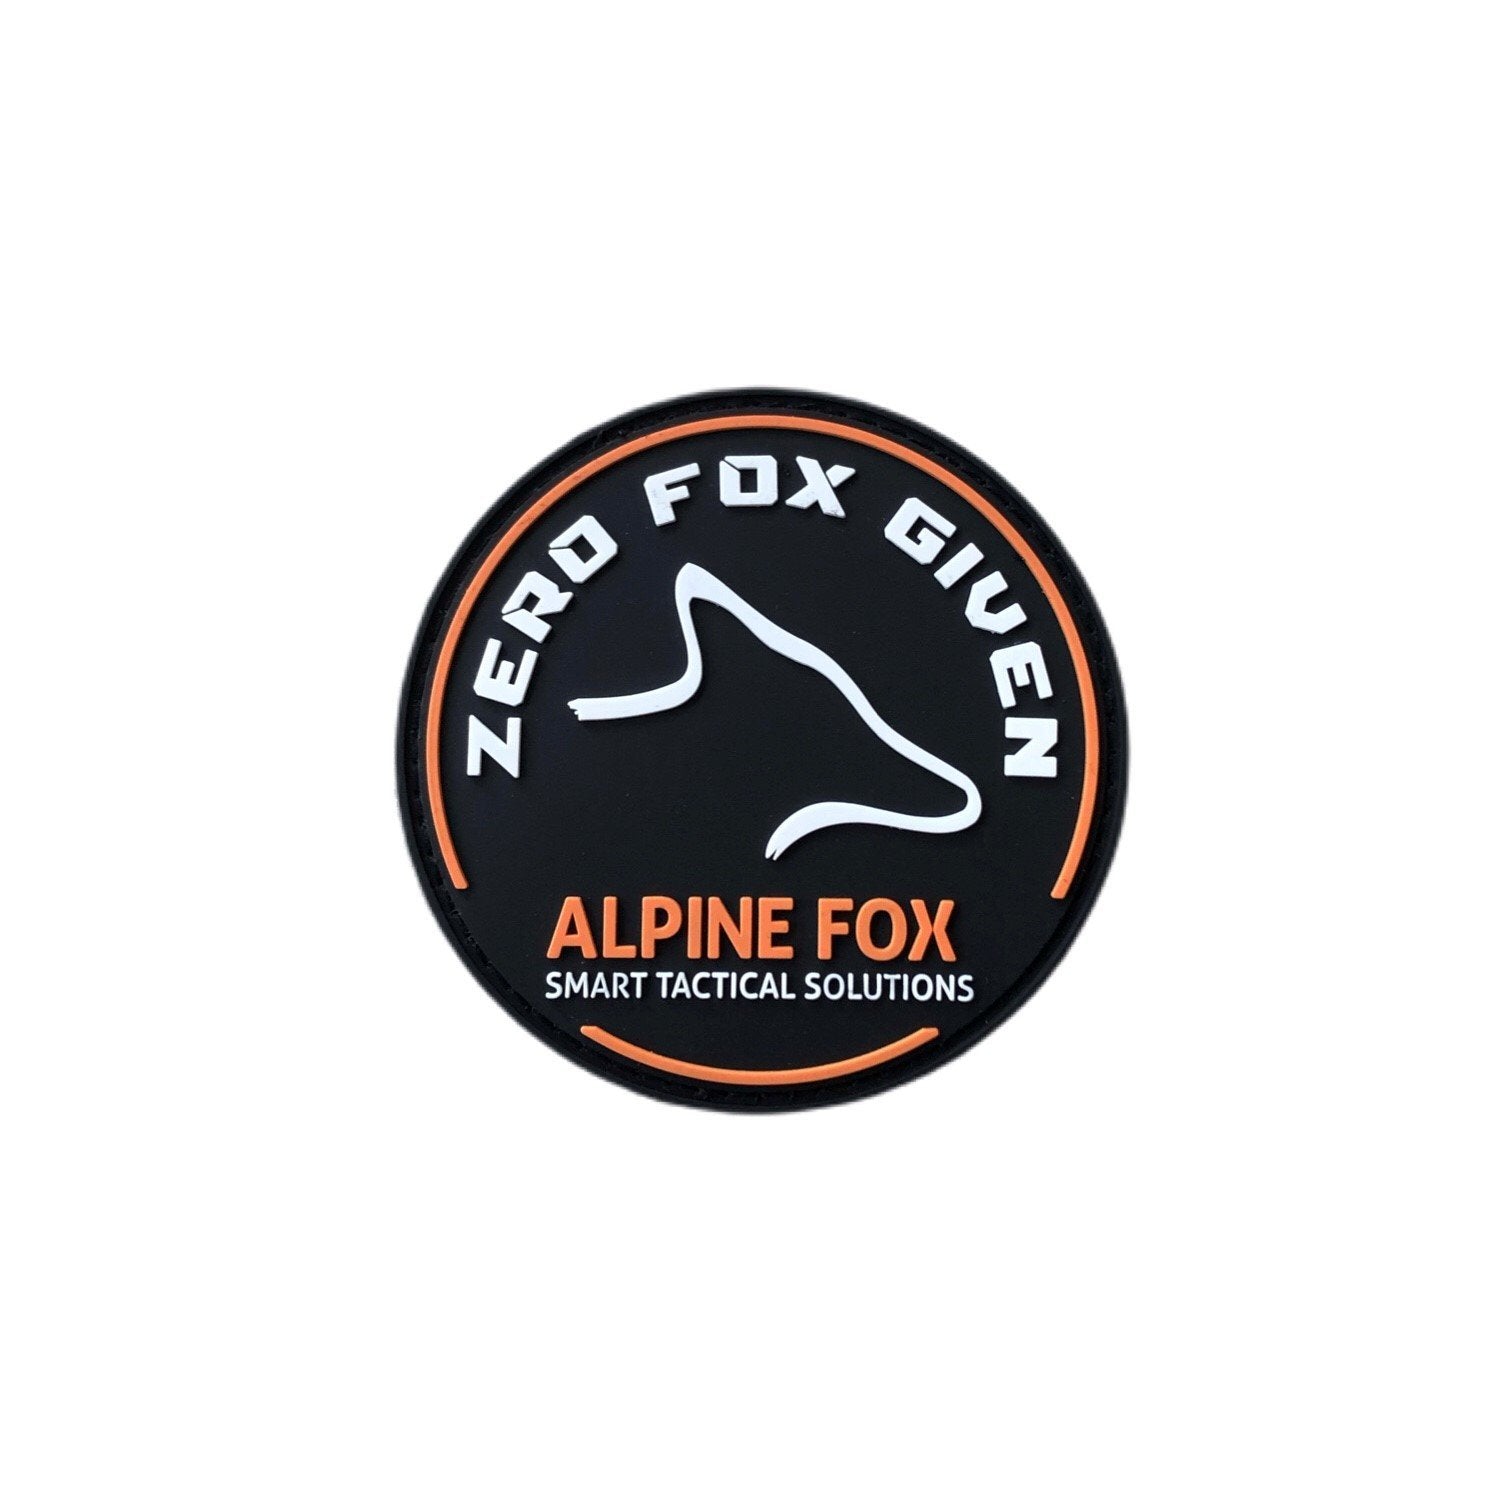 Alpine Fox Zero Fox Given Patch schwarz